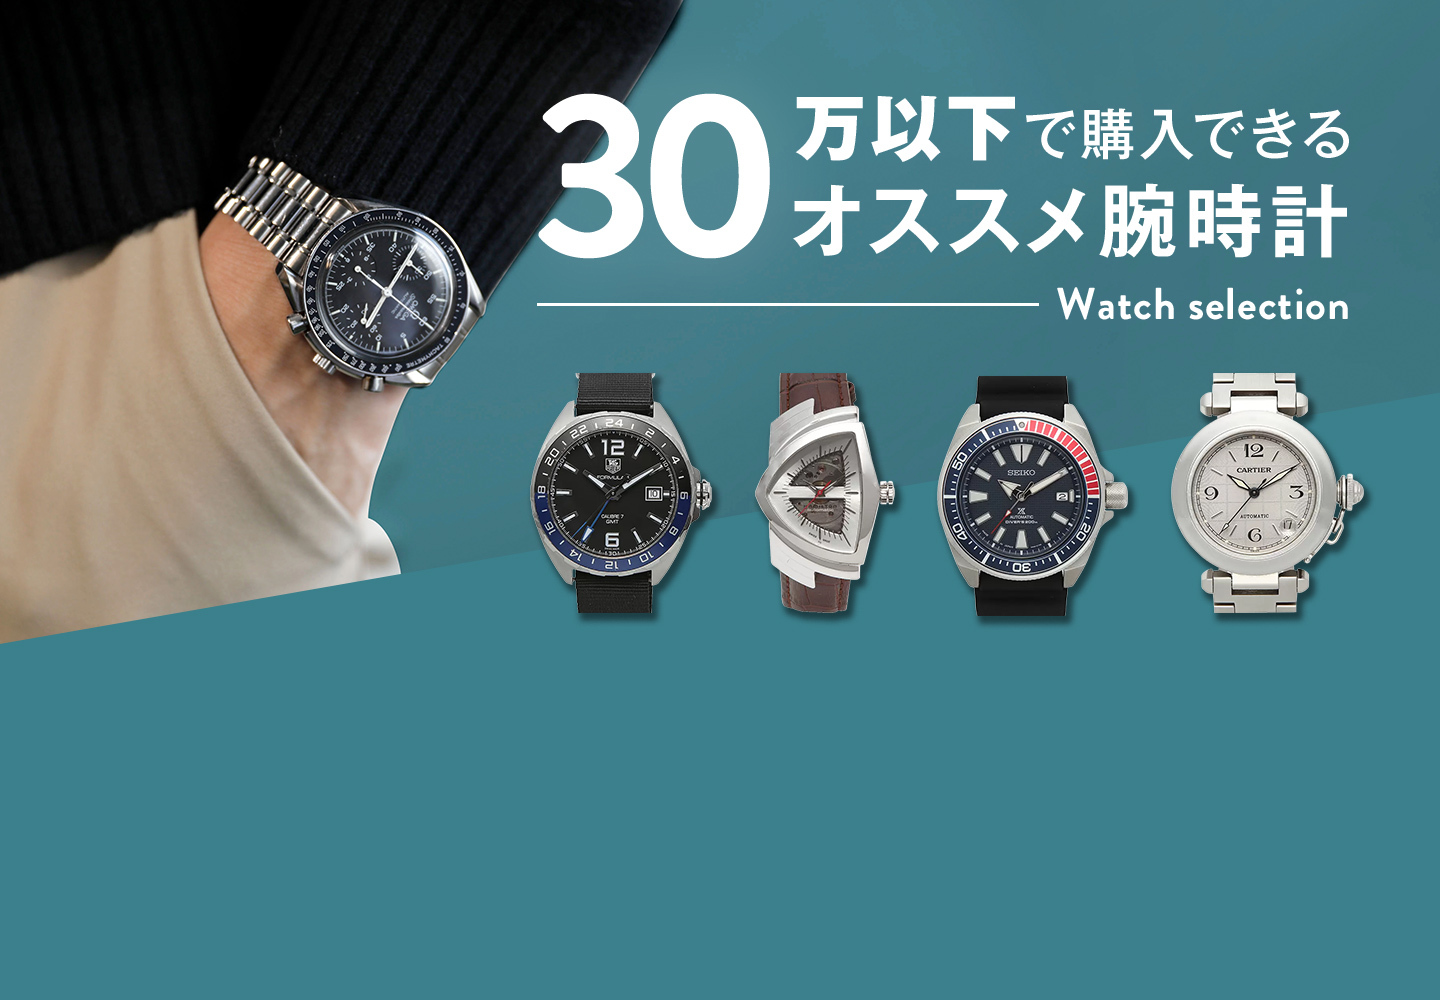 30万円以下で購入できるオススメ腕時計